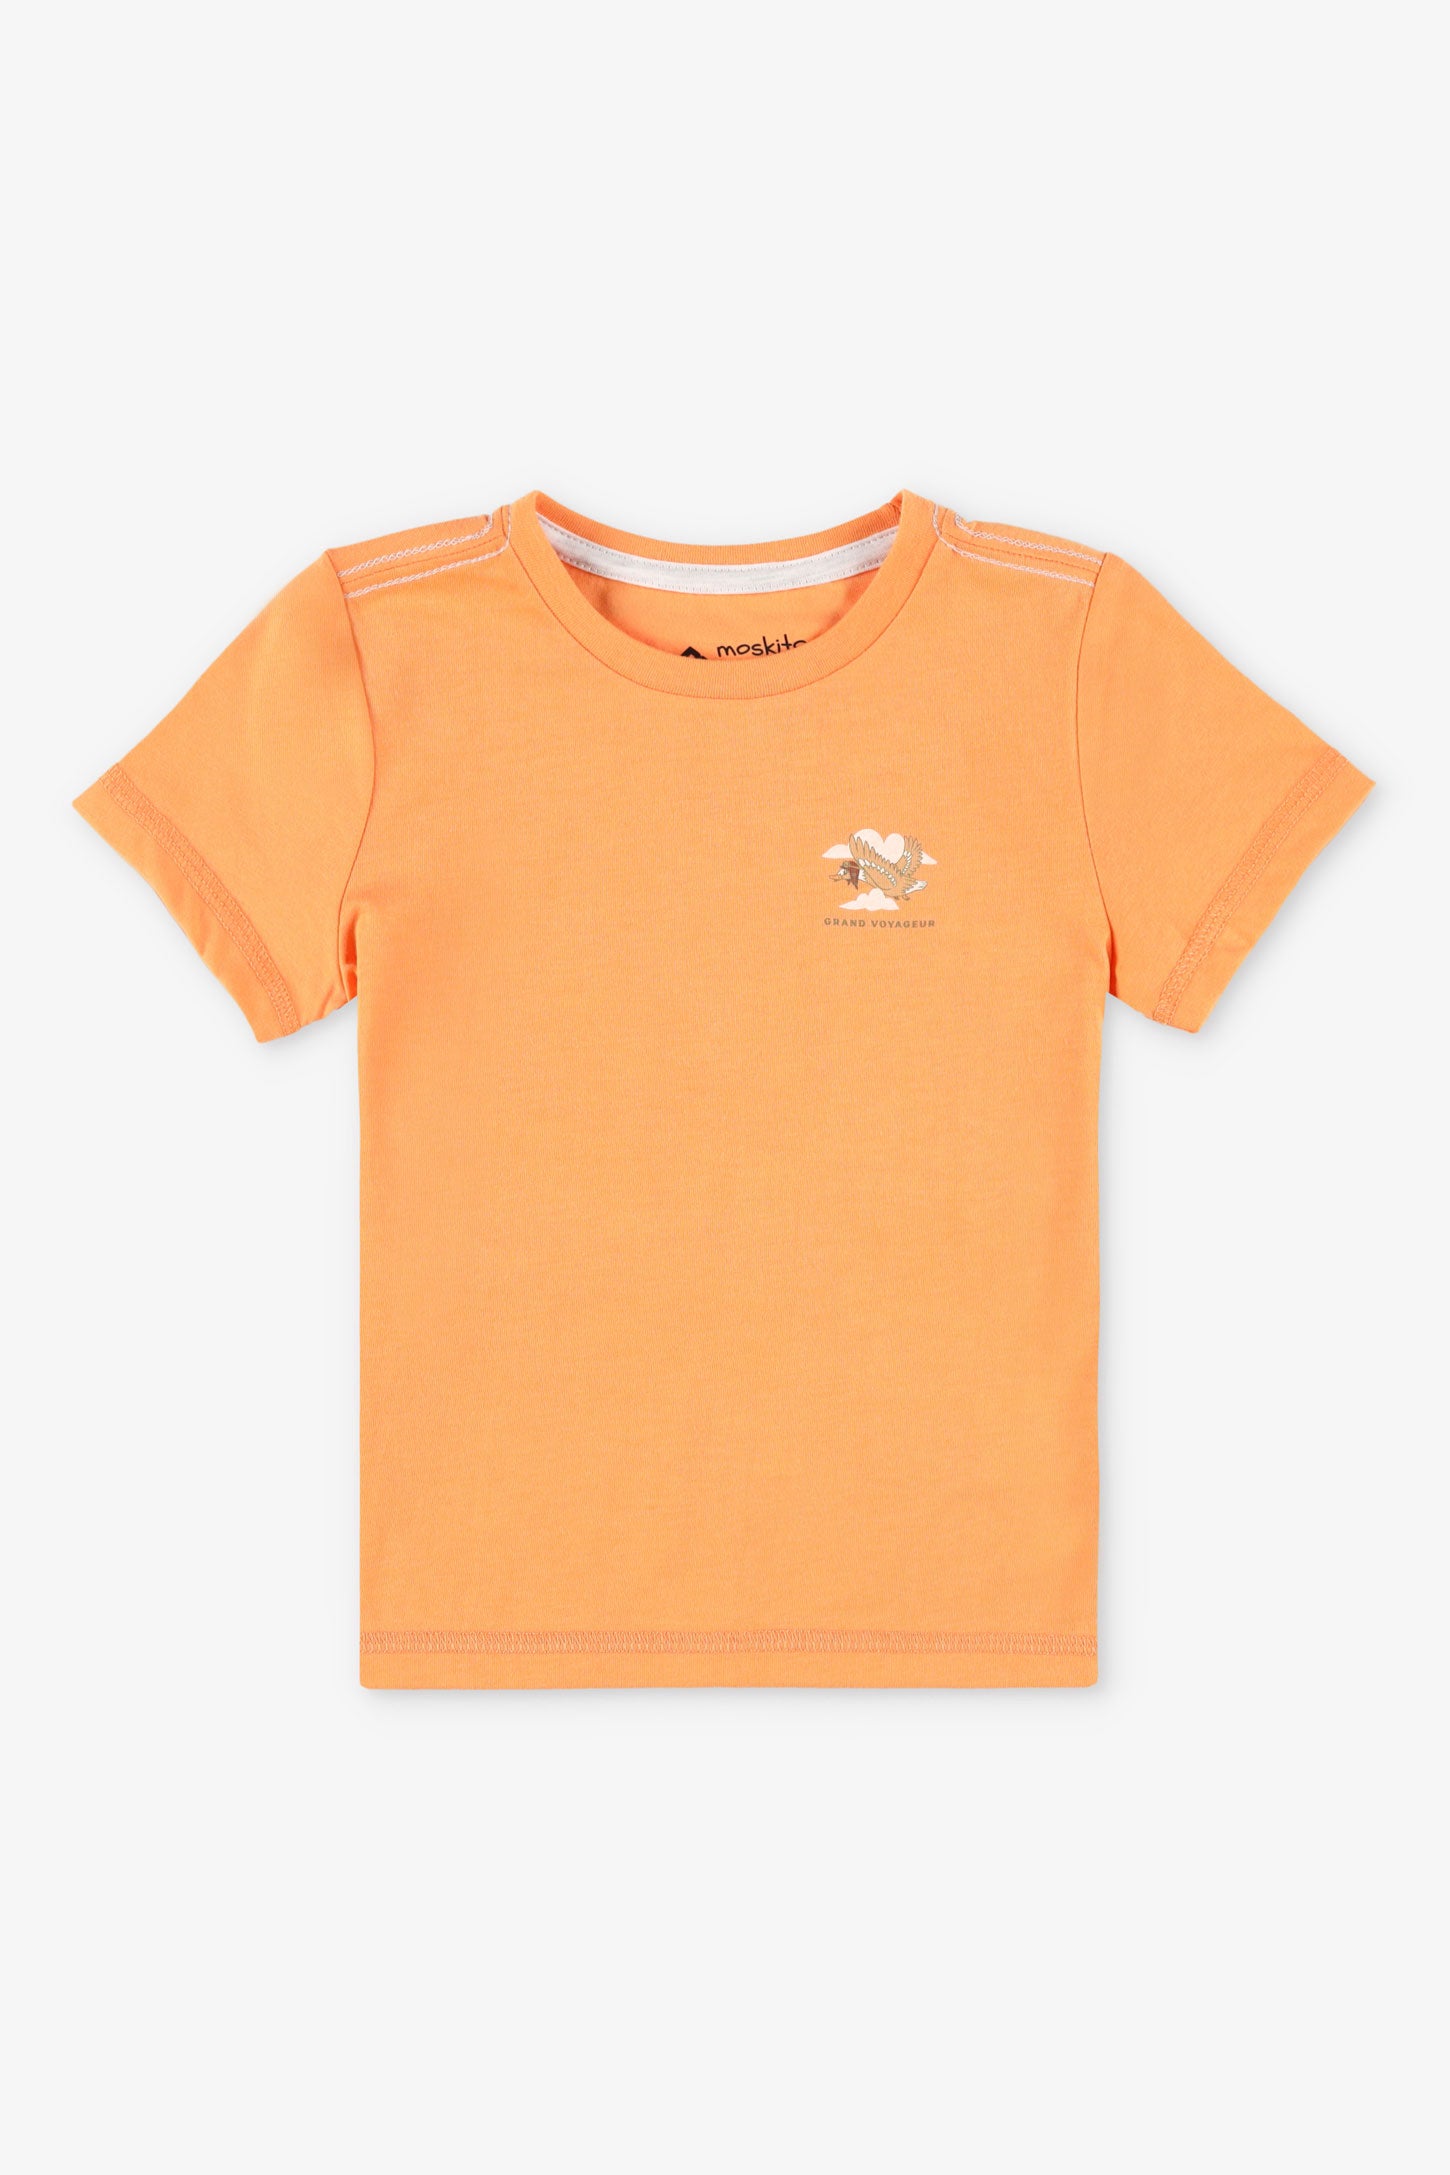 T-shirt col rond coton bio BM, 2T-3T, 2/25$ - Bébé garçon && ORANGE